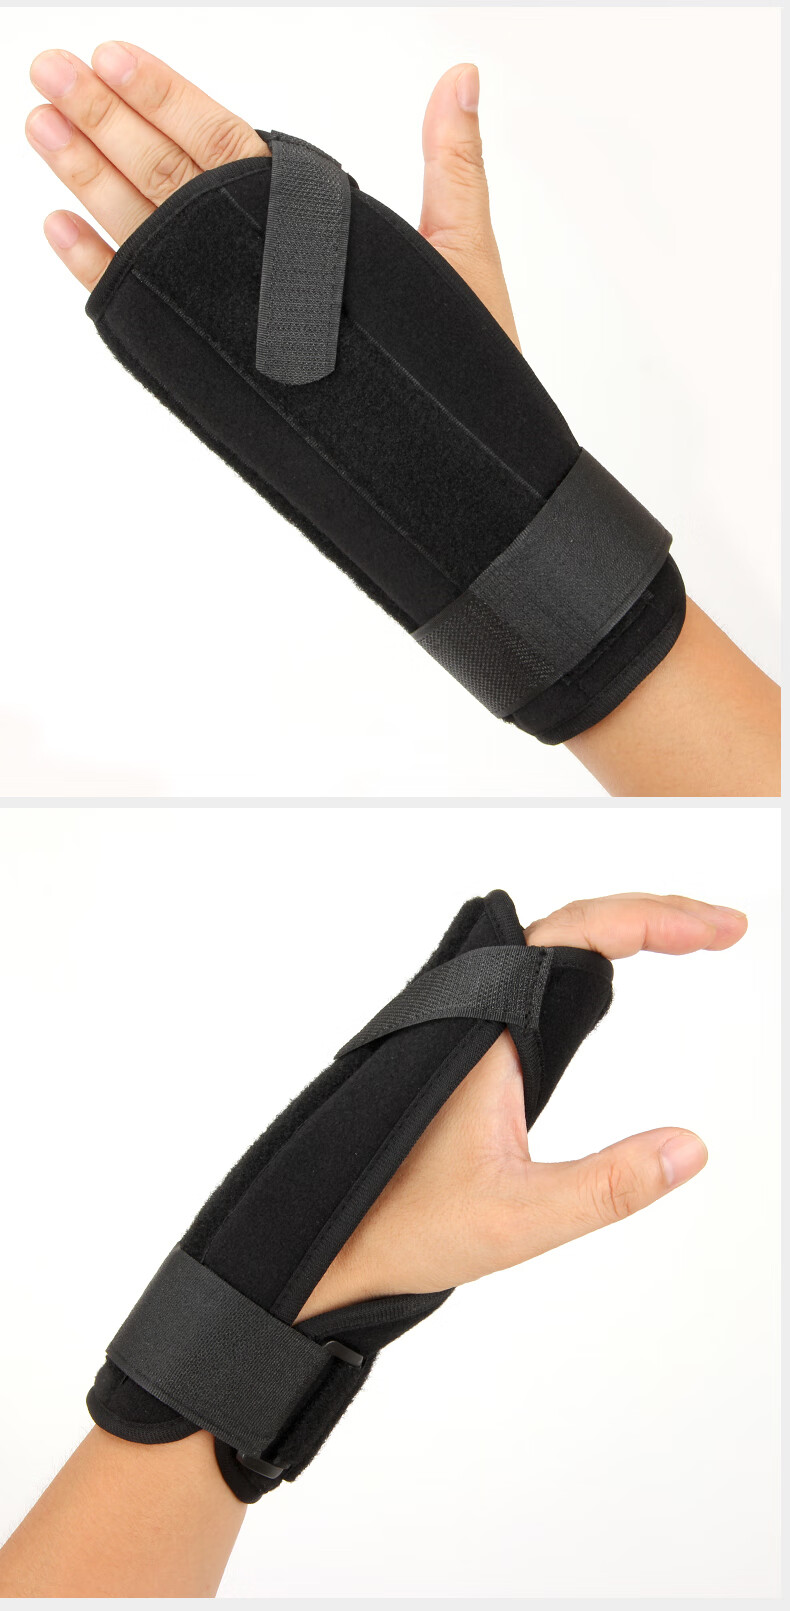 掌骨固定支具成人手掌腕指关节脱位扭伤夹板支撑骨折术后康复护具